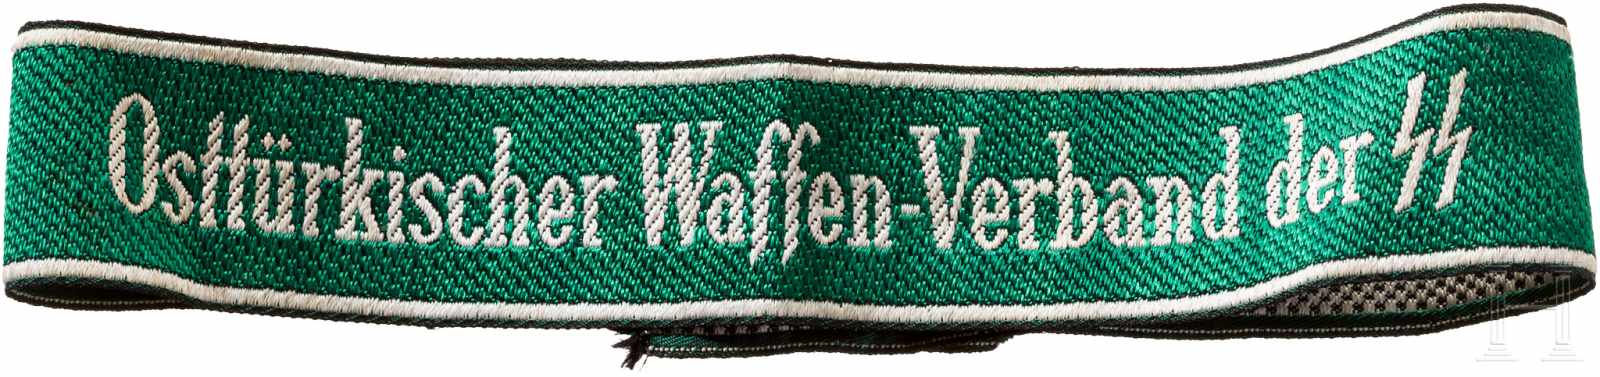 Ärmelband "Osttürkischer Waffen-Verband der SS"Grünes Band in Bevo-Ausführung mit weiß eingewebtem